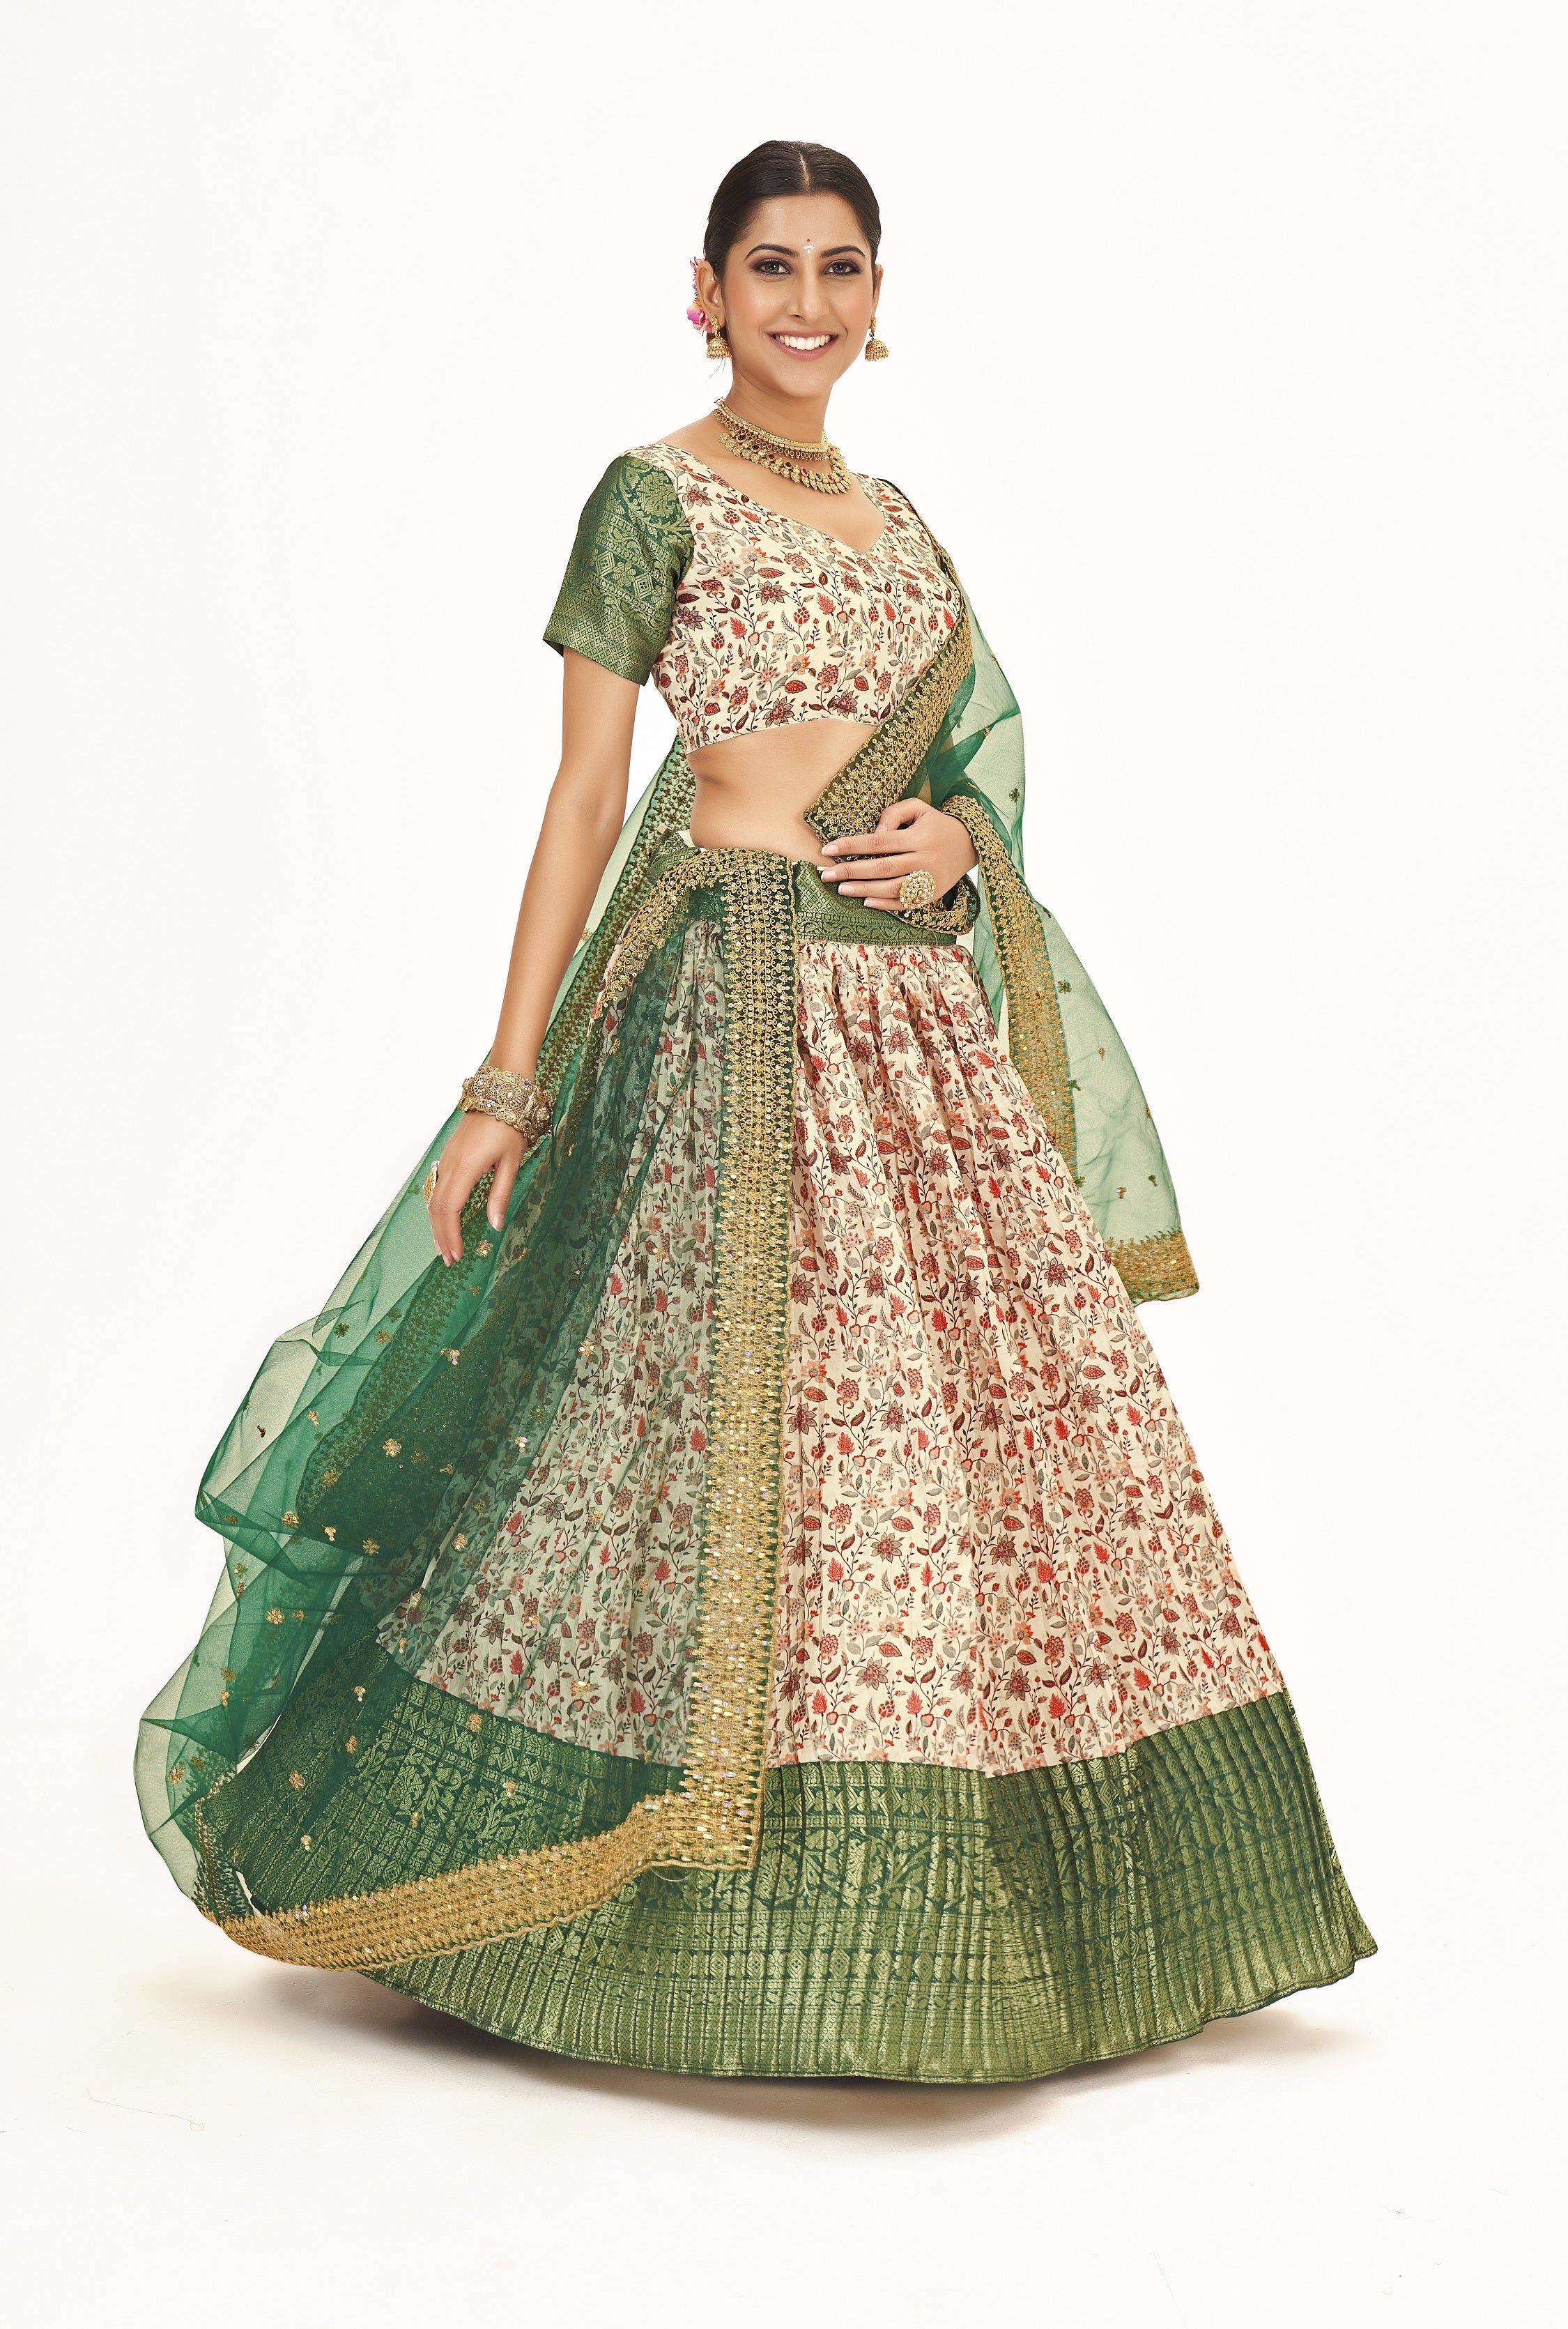 Superb Off White & Green Floral Printed Weaving Work Banarasi Silk Half Saree Lehenga Choli